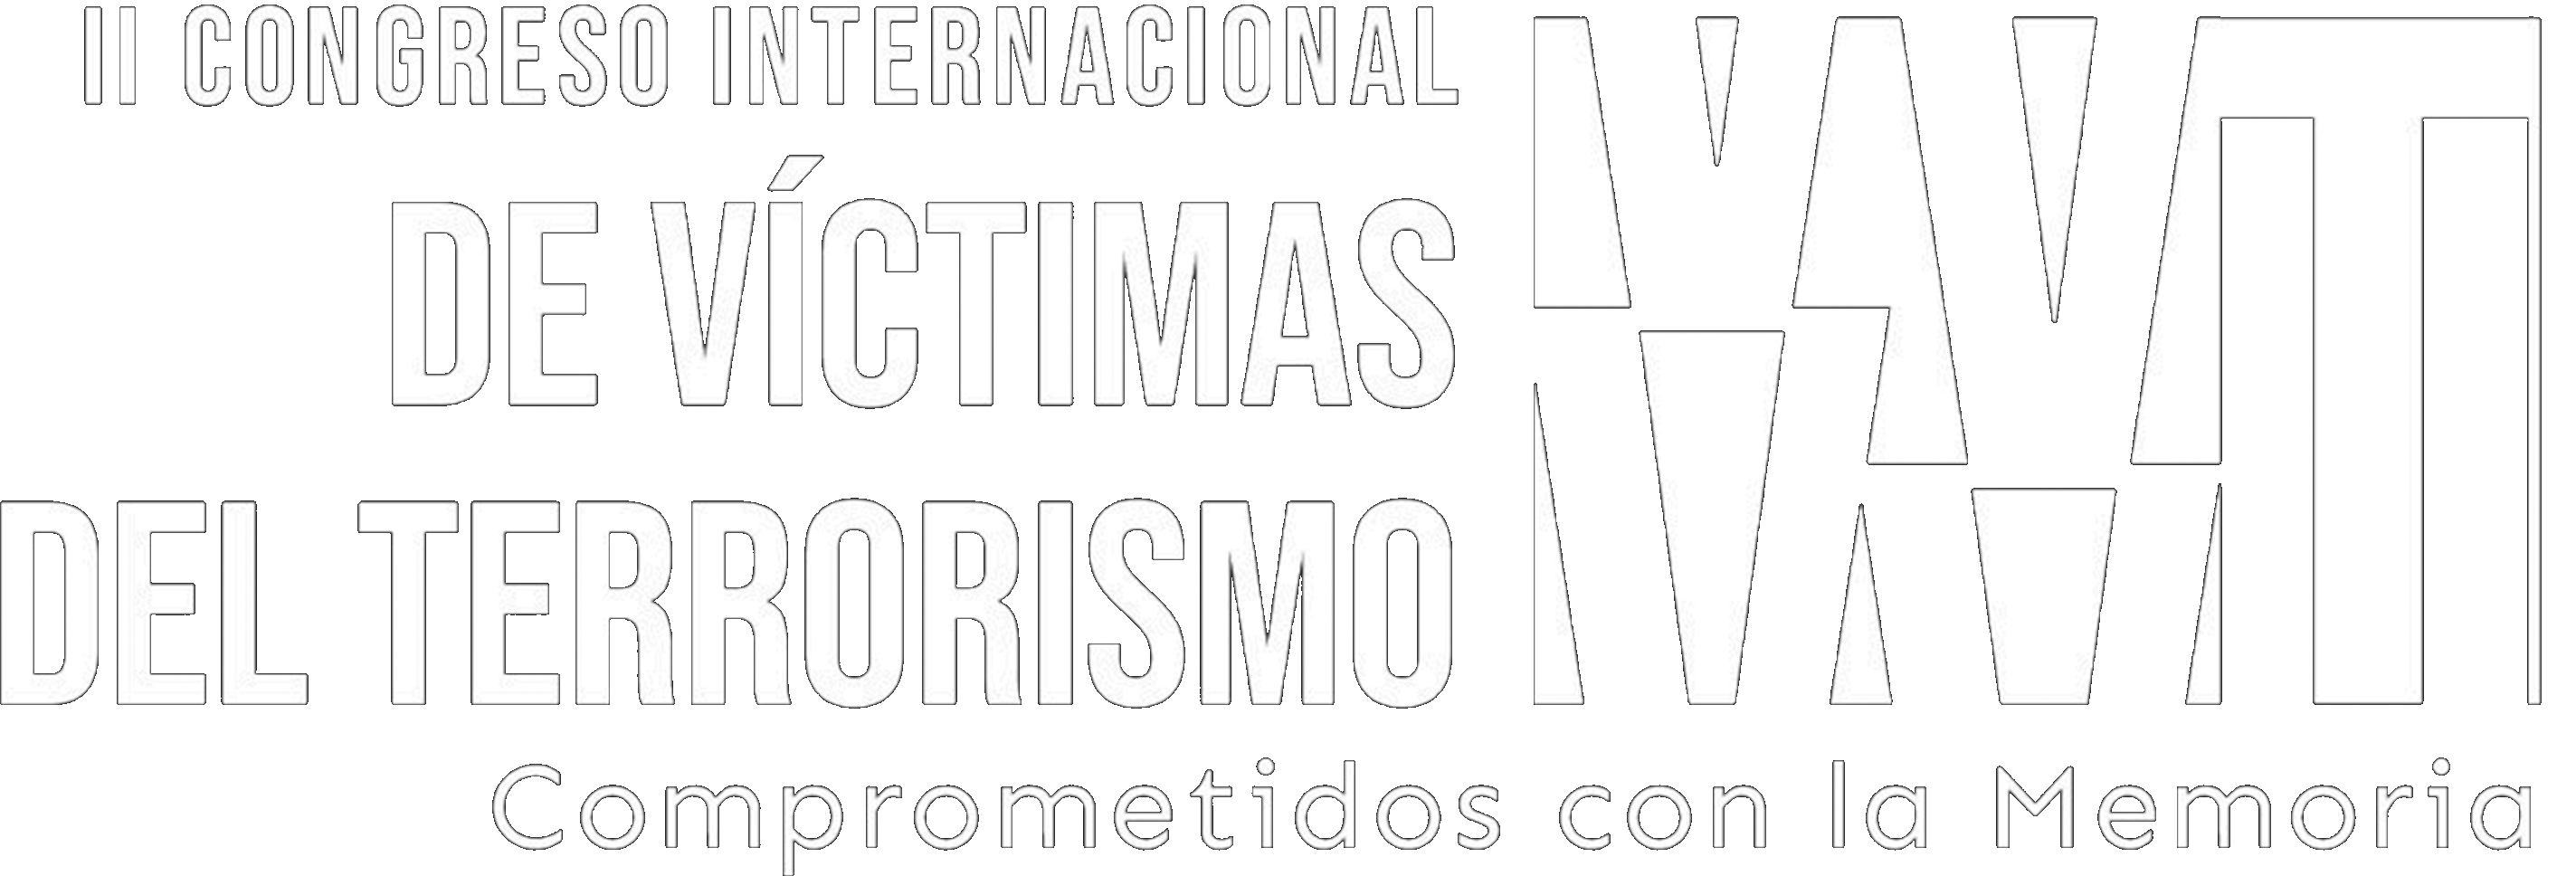 II CONGRESO INTERNACIONAL DE VÍCTIMAS DEL TERRORISMO